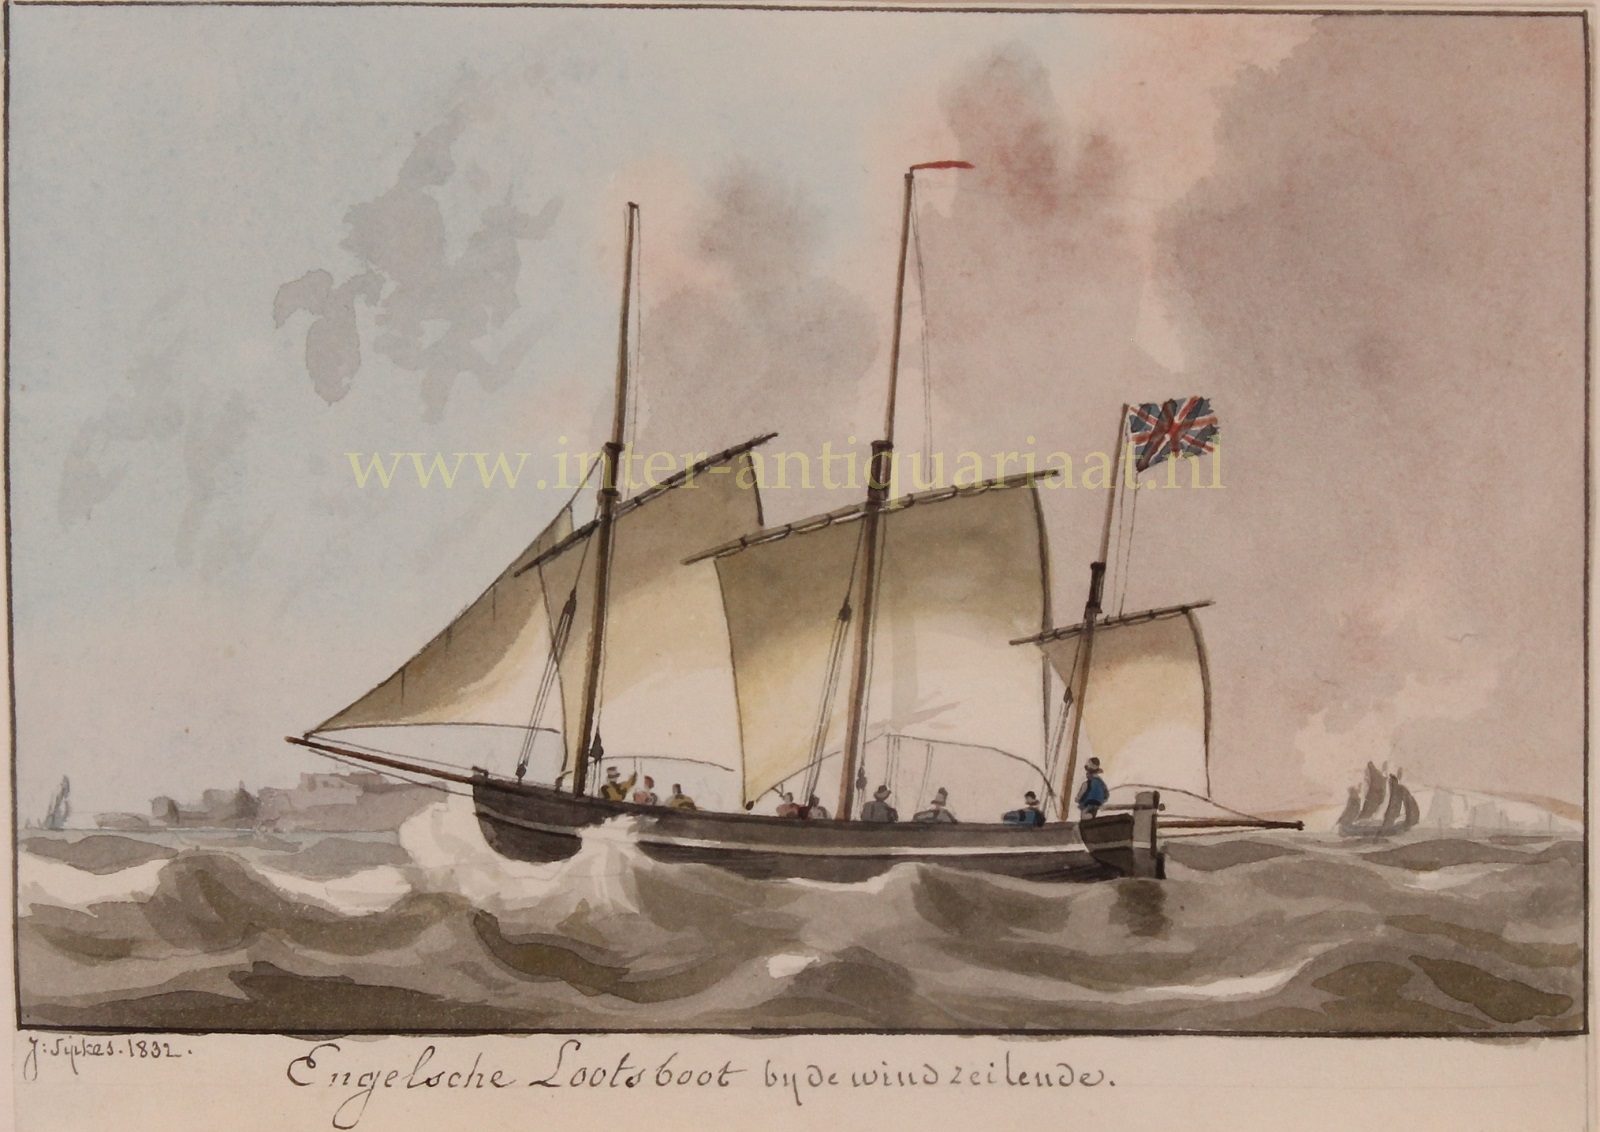 sipkes - English pilot boat - Joseph Sipkes, 1832